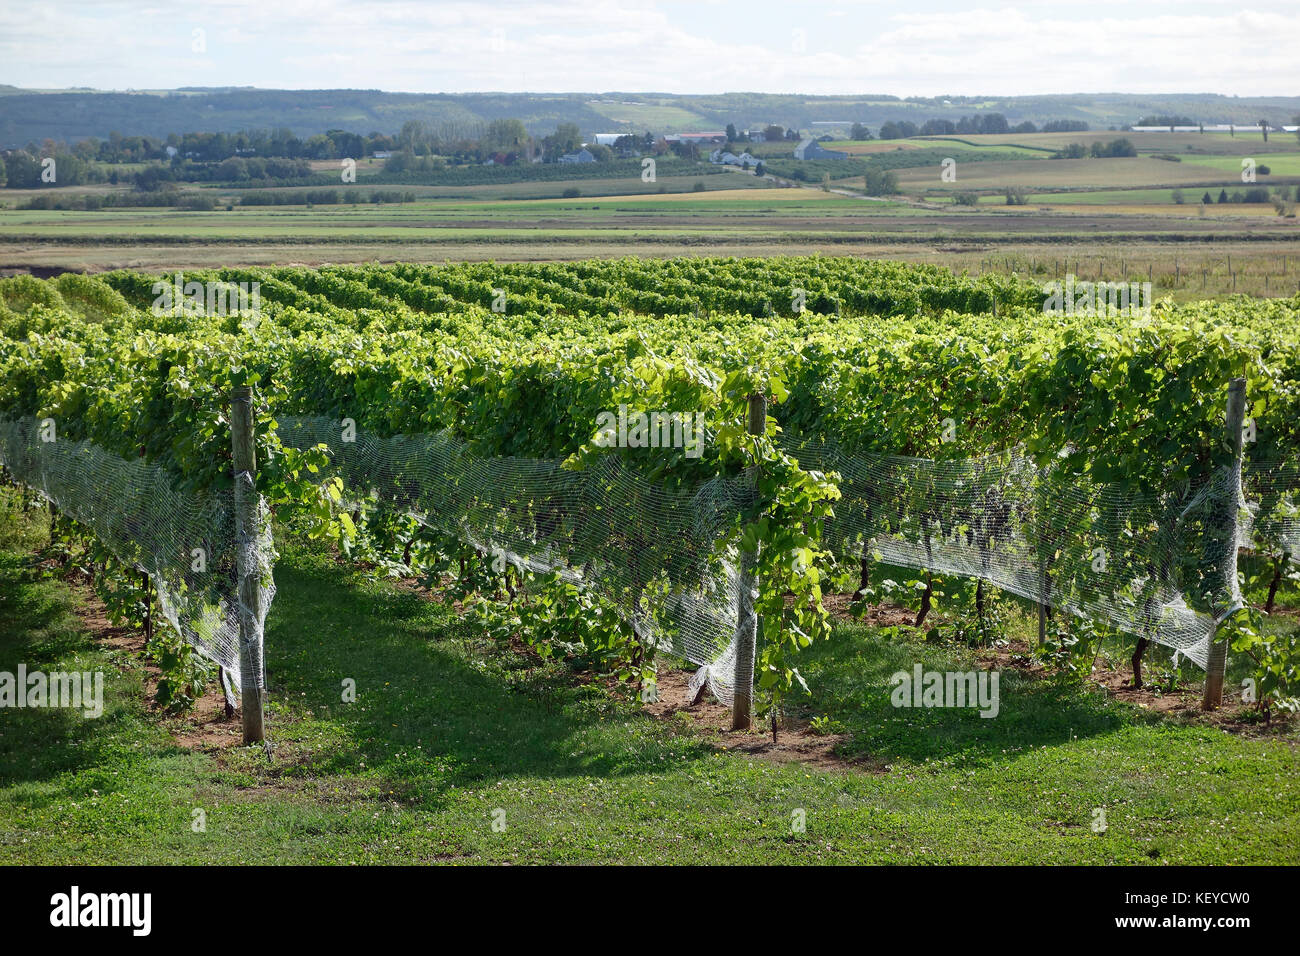 Vineyard in the Annapolis Valley, Nova Scotia Stock Photo